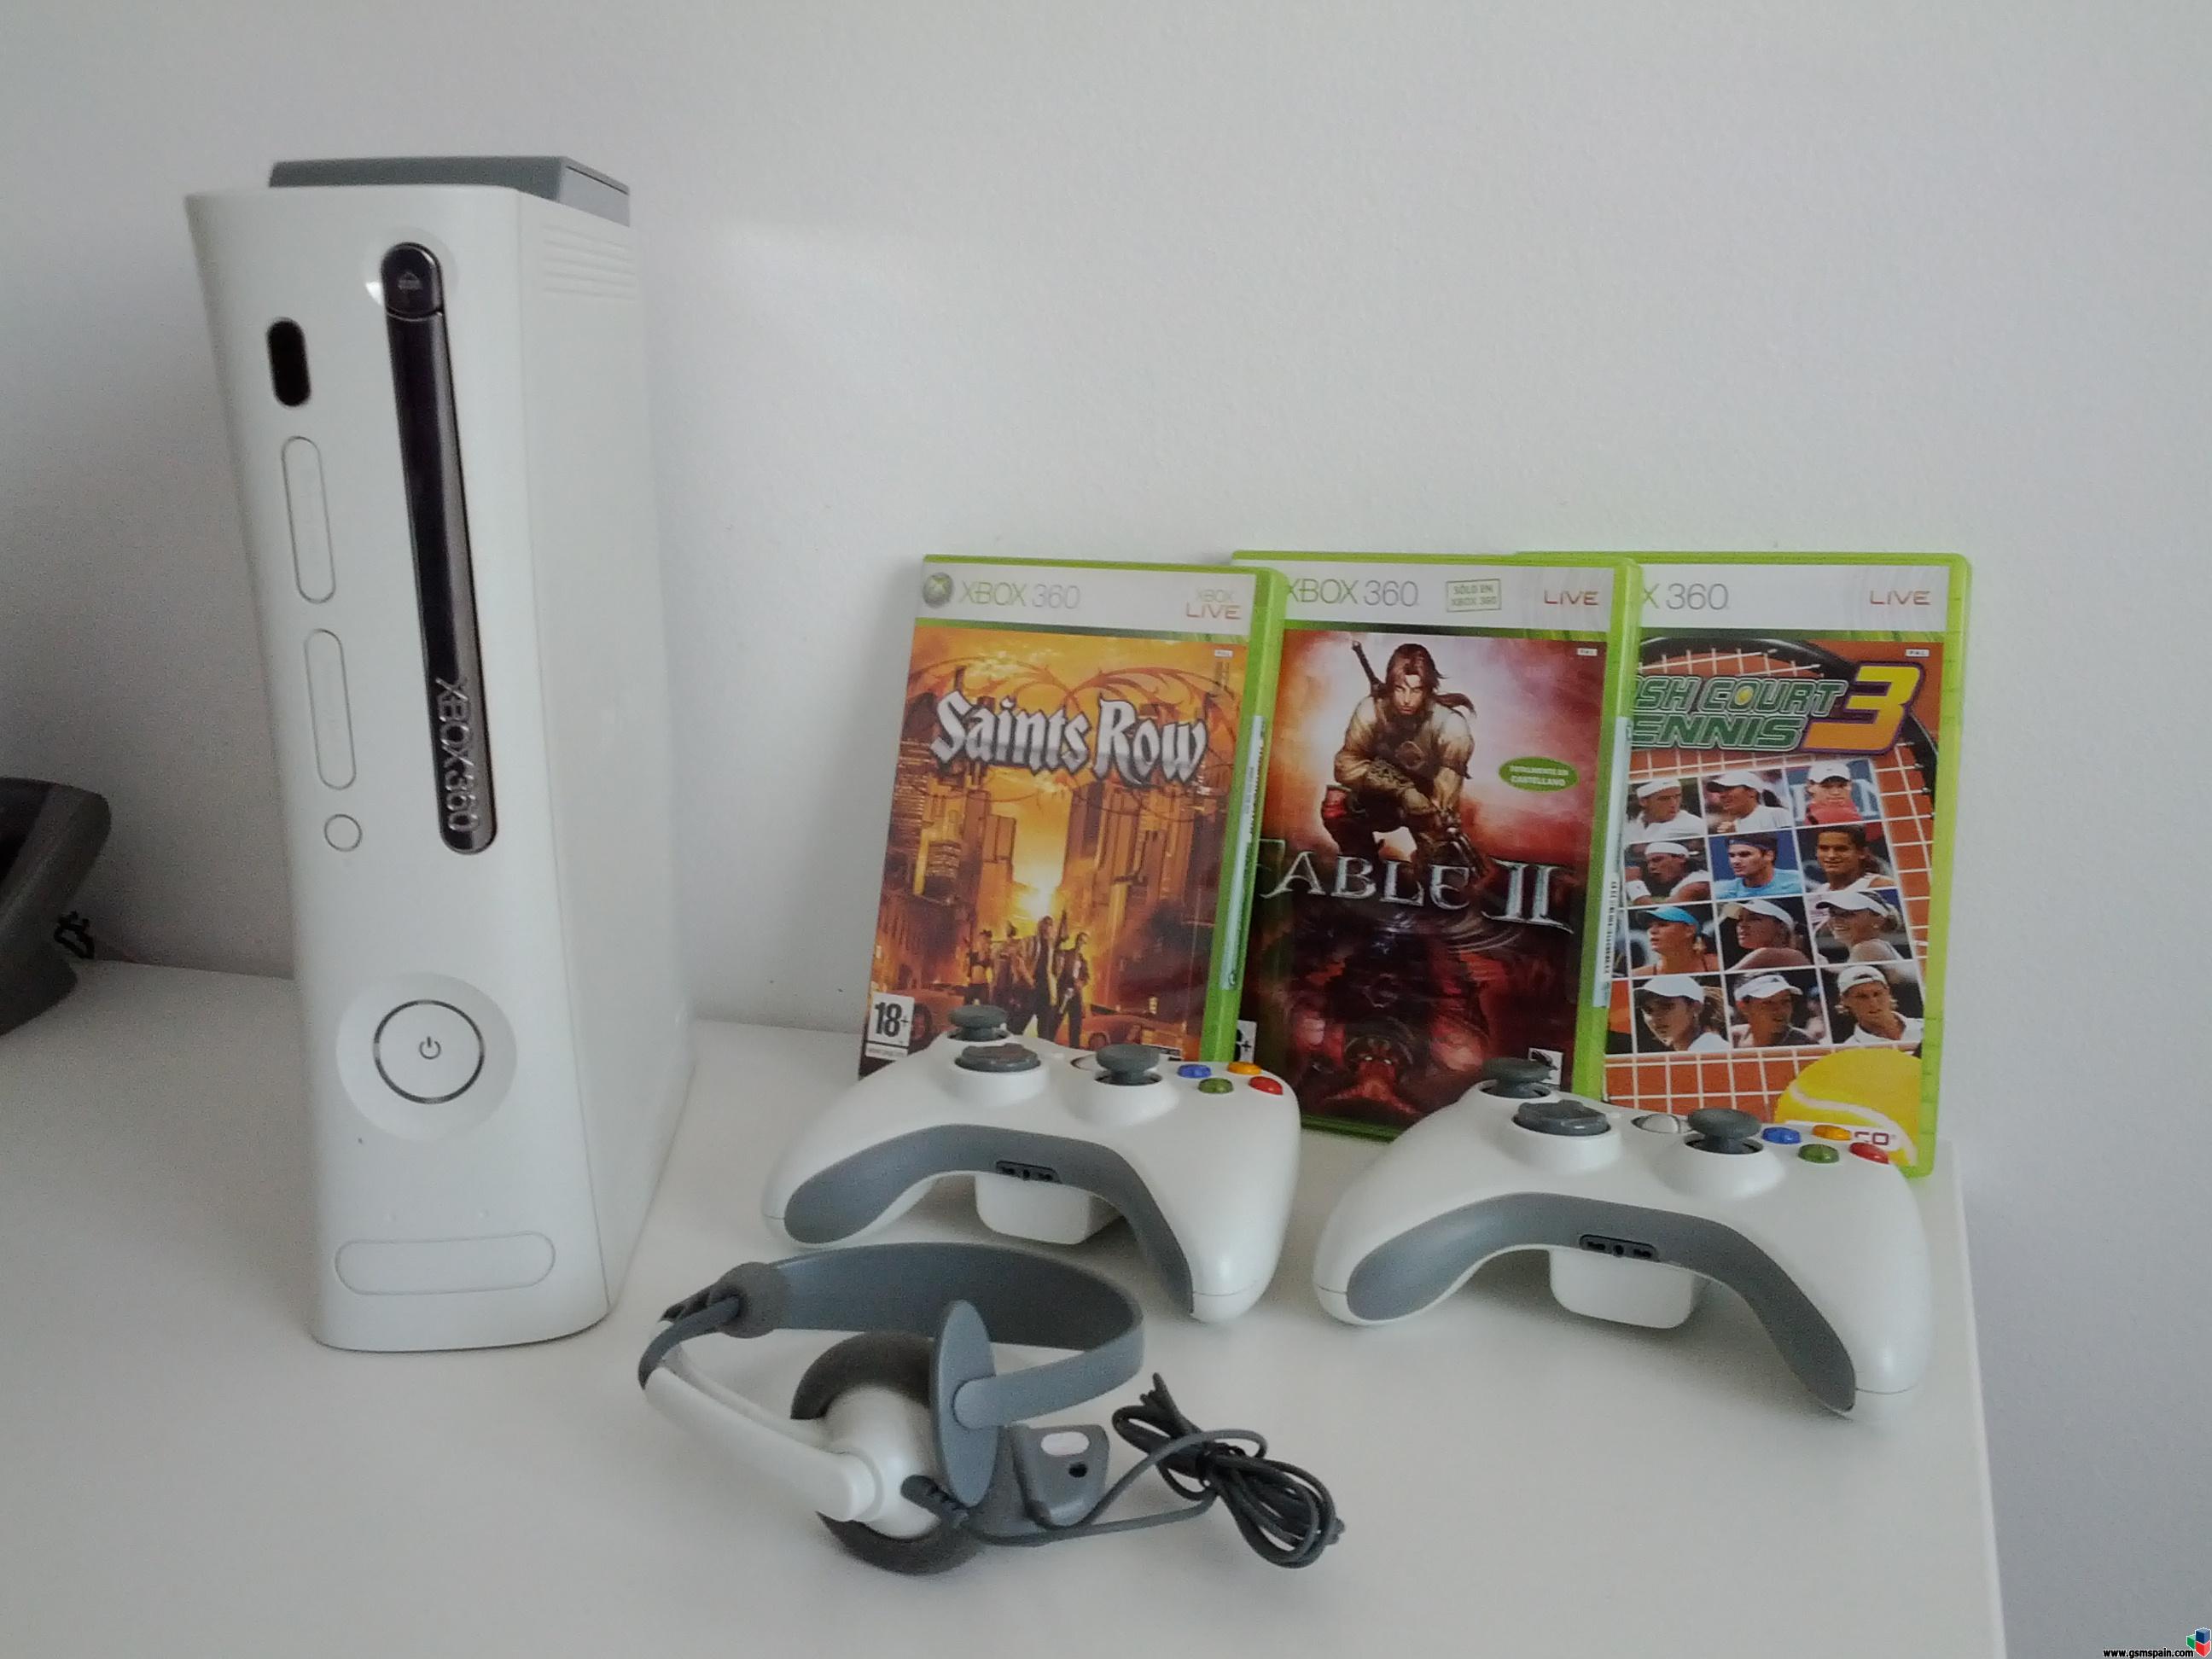 [VENDO] Xbox 360 + mandos + juegos + volante original + soporte volante